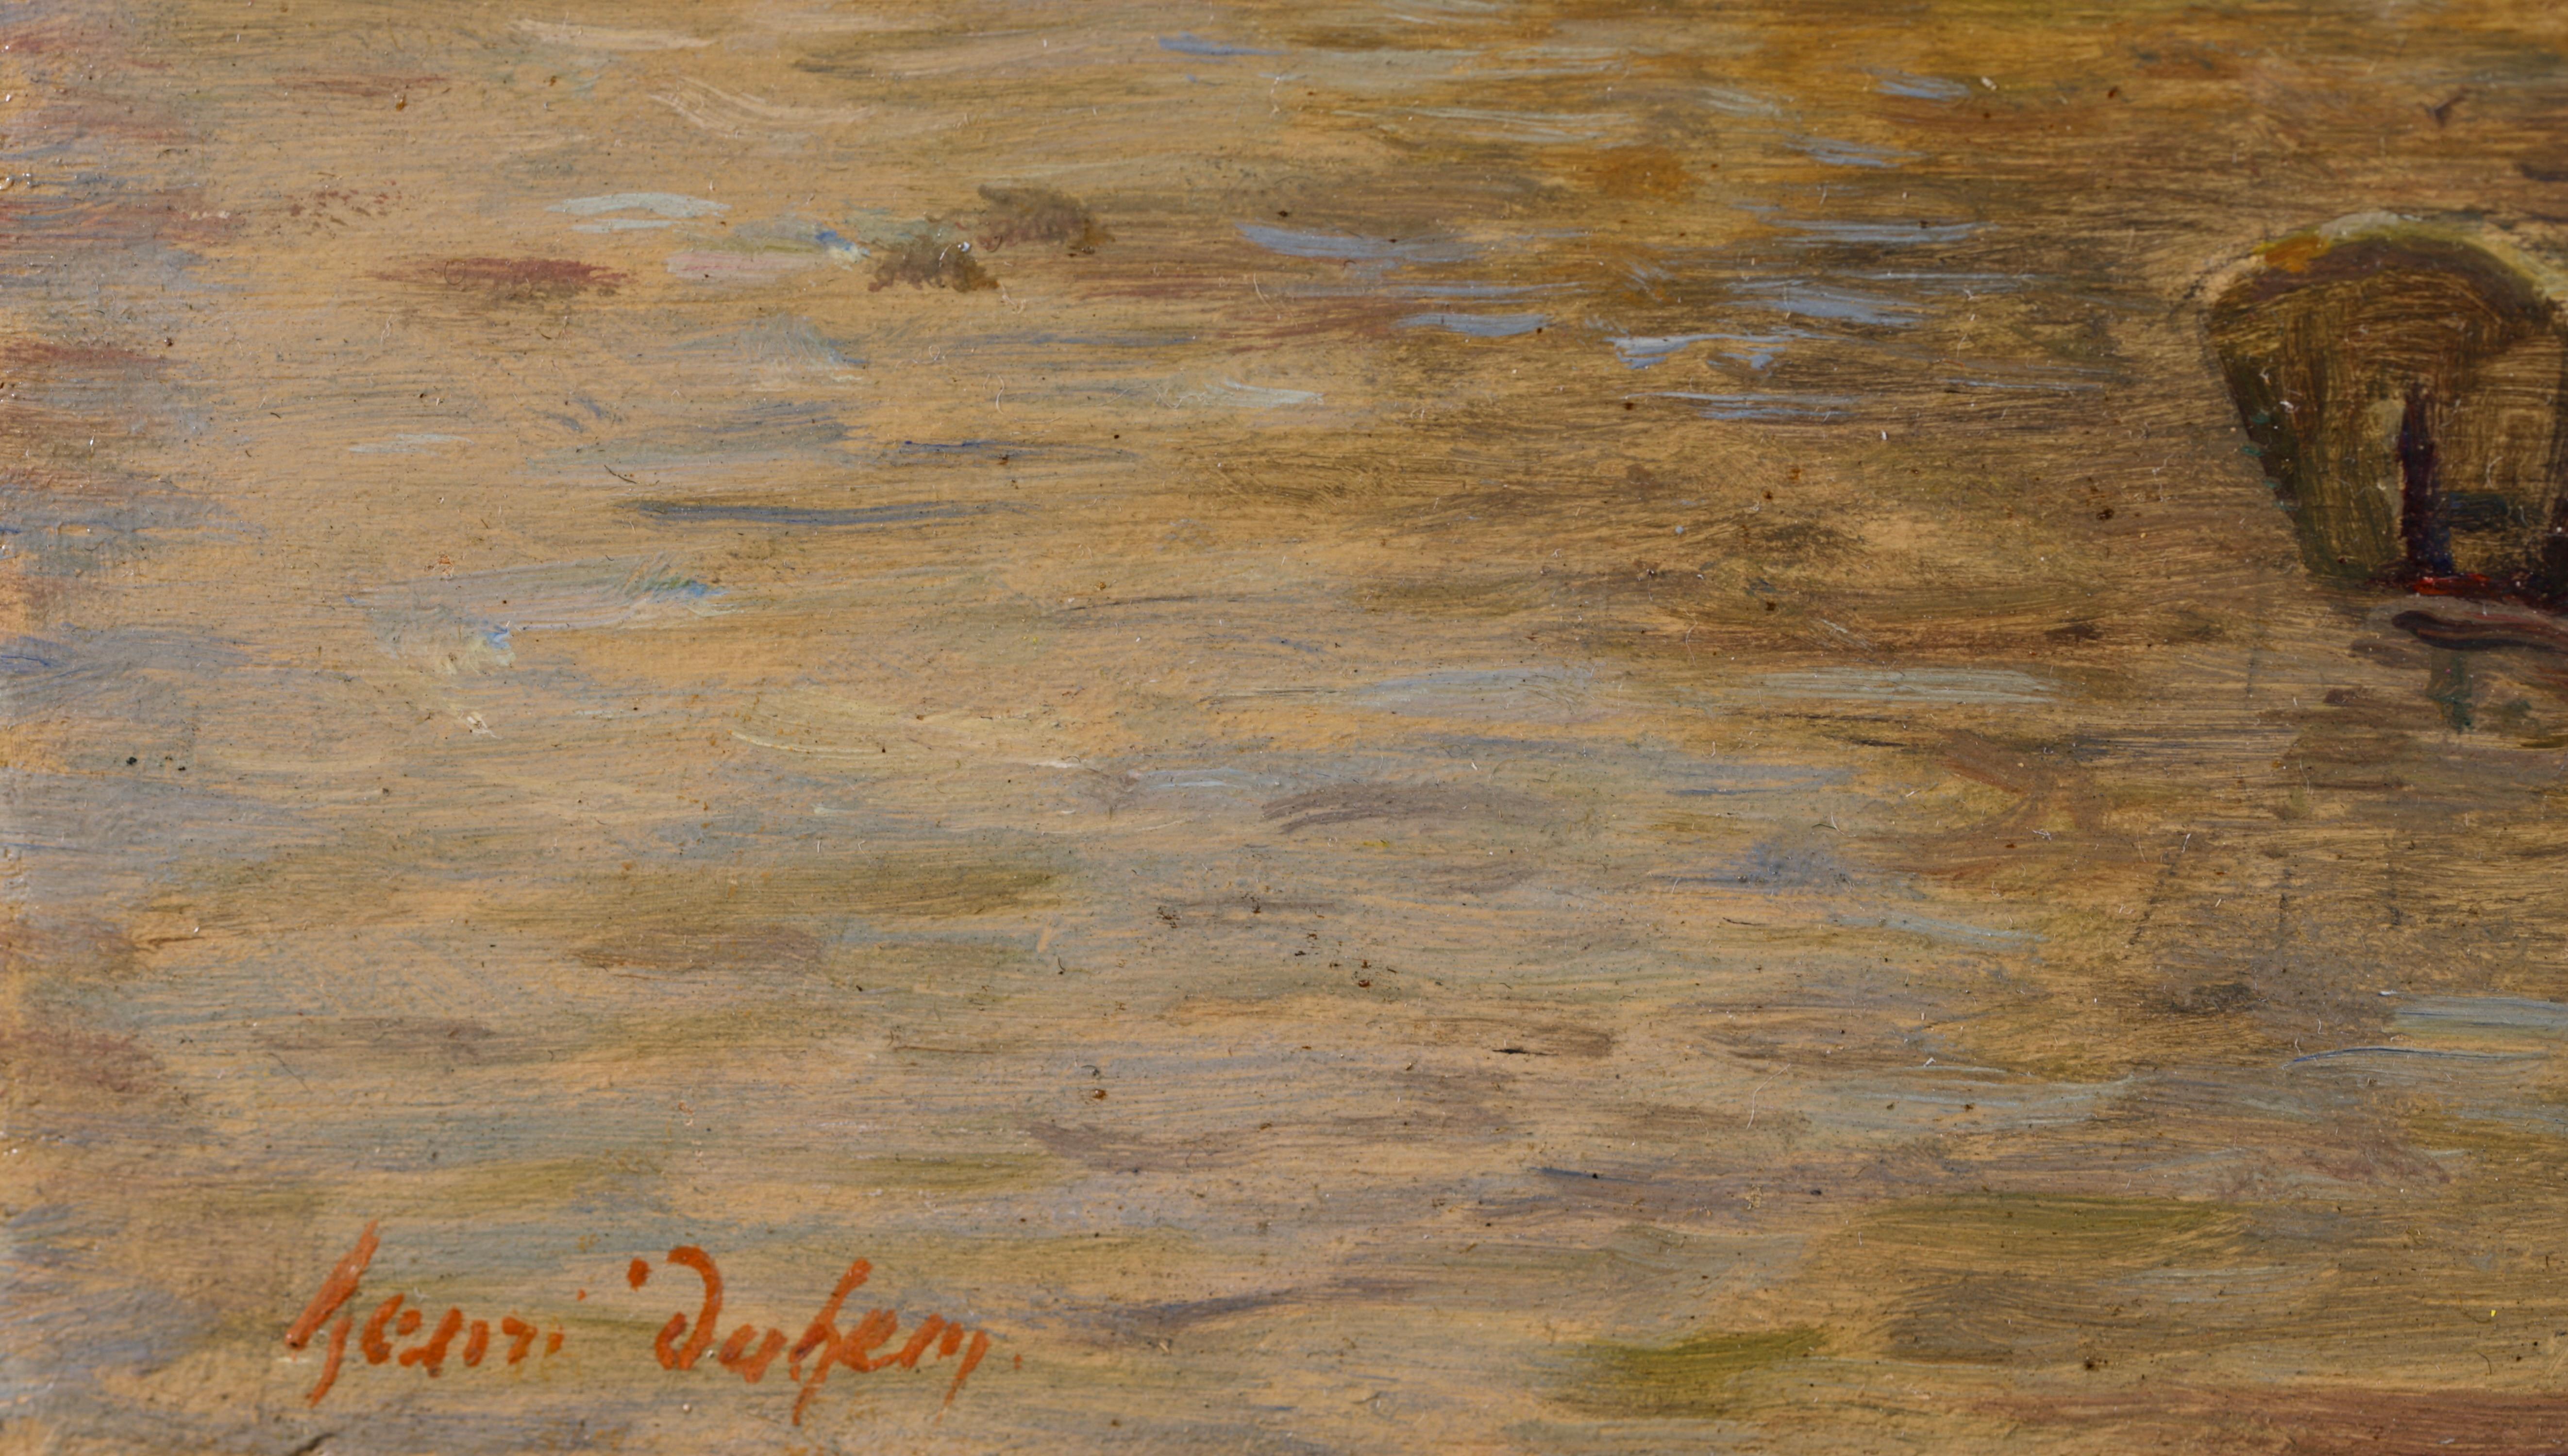 Peinture impressionniste Figures by River Landscape d'Henri Duhem en vente 1